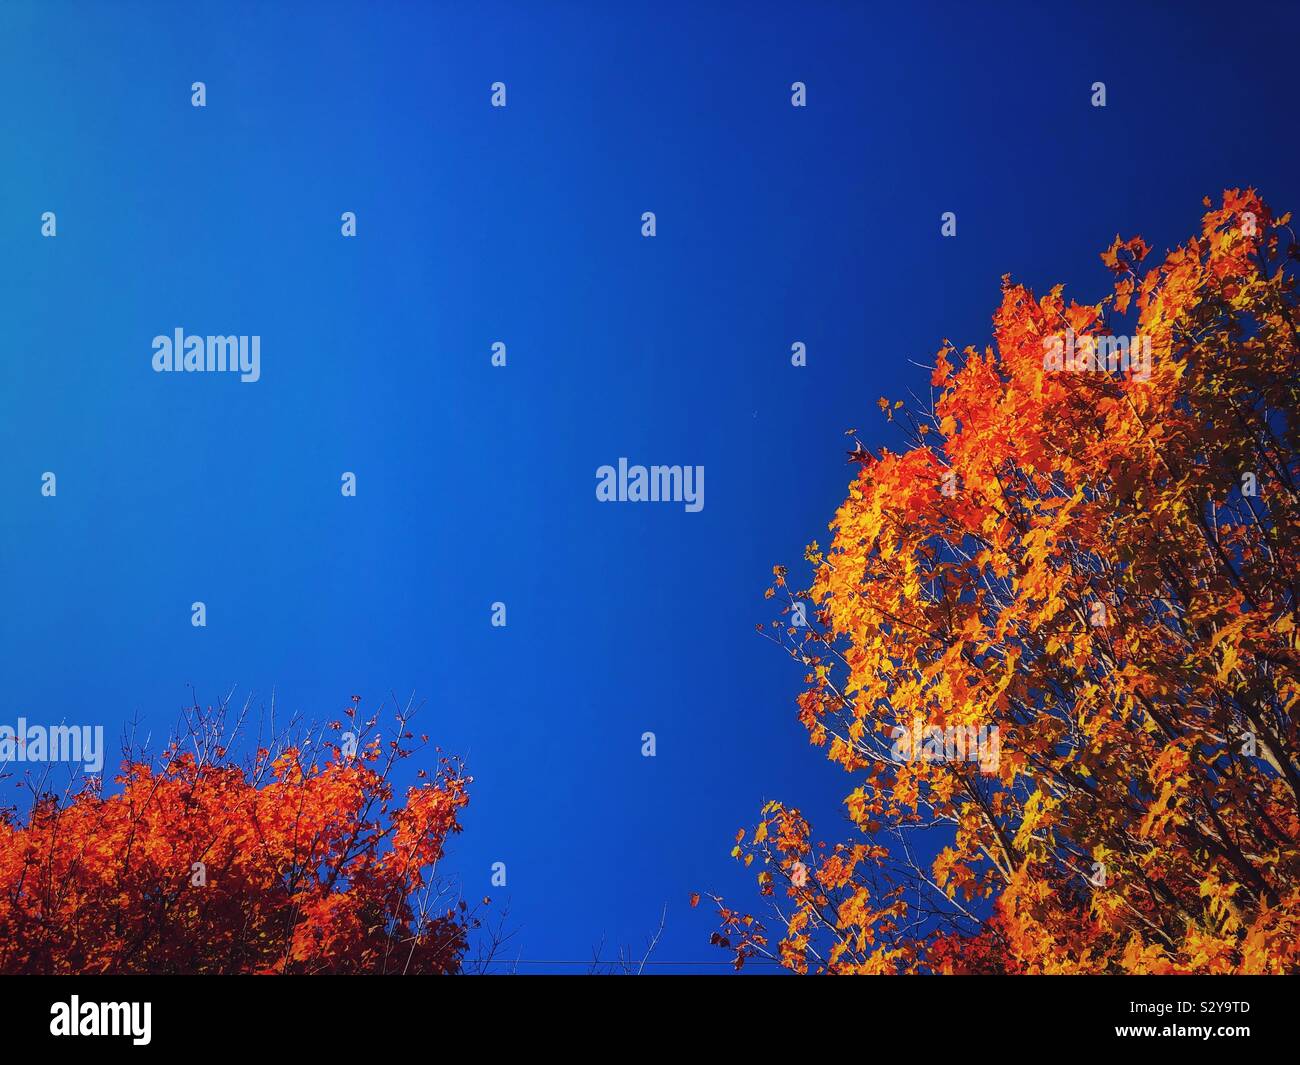 El rojo, el naranja y el Amarillo otoño árboles contra el cielo azul en un día soleado Foto de stock